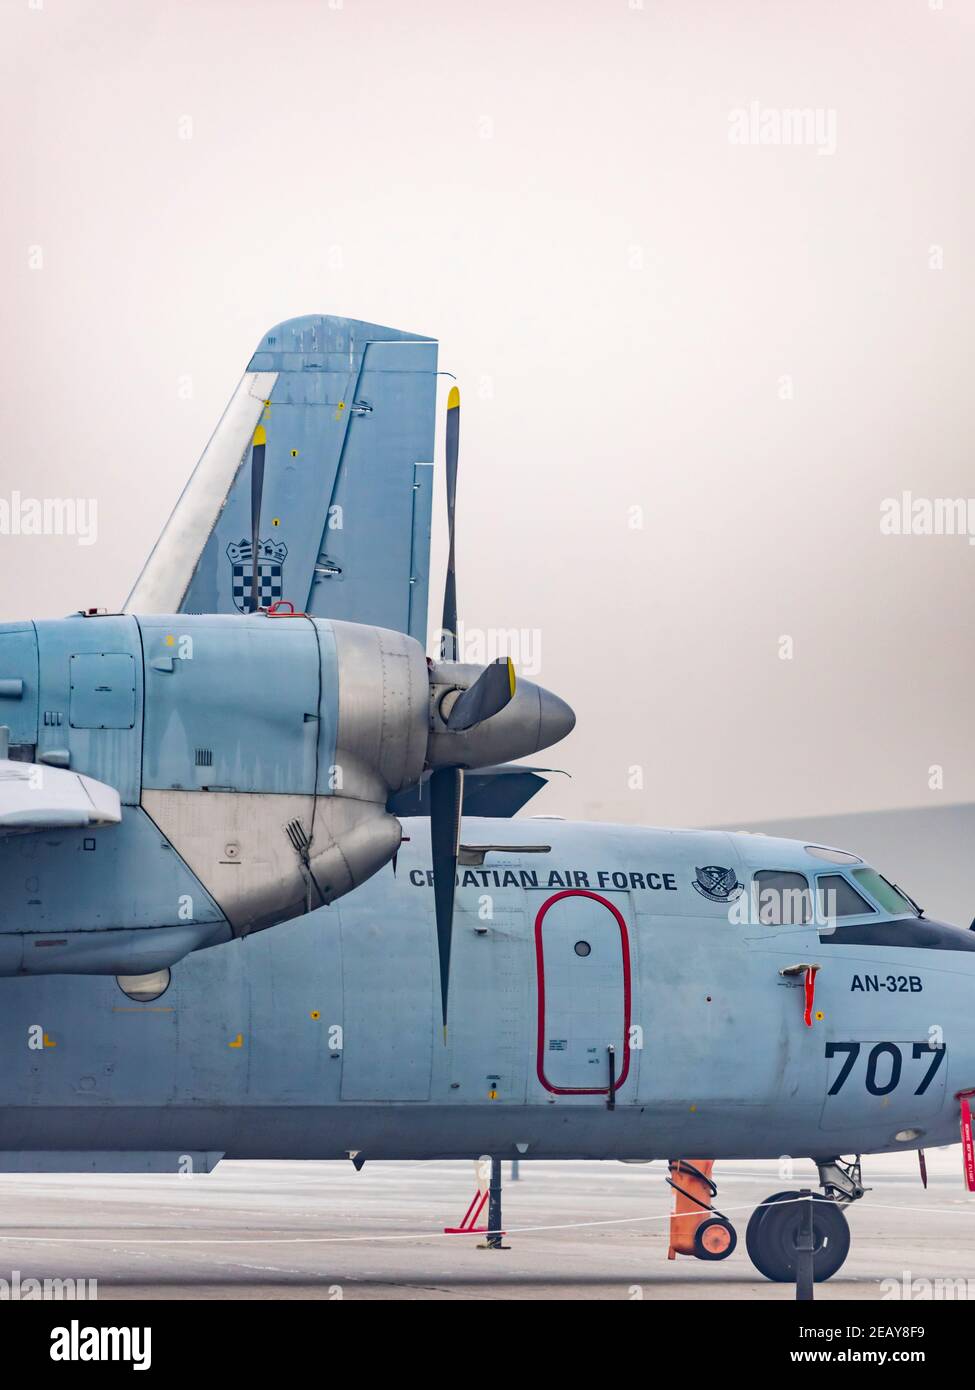 Aereo croato AN-32b presso la base aerea di Pleso Foto Stock